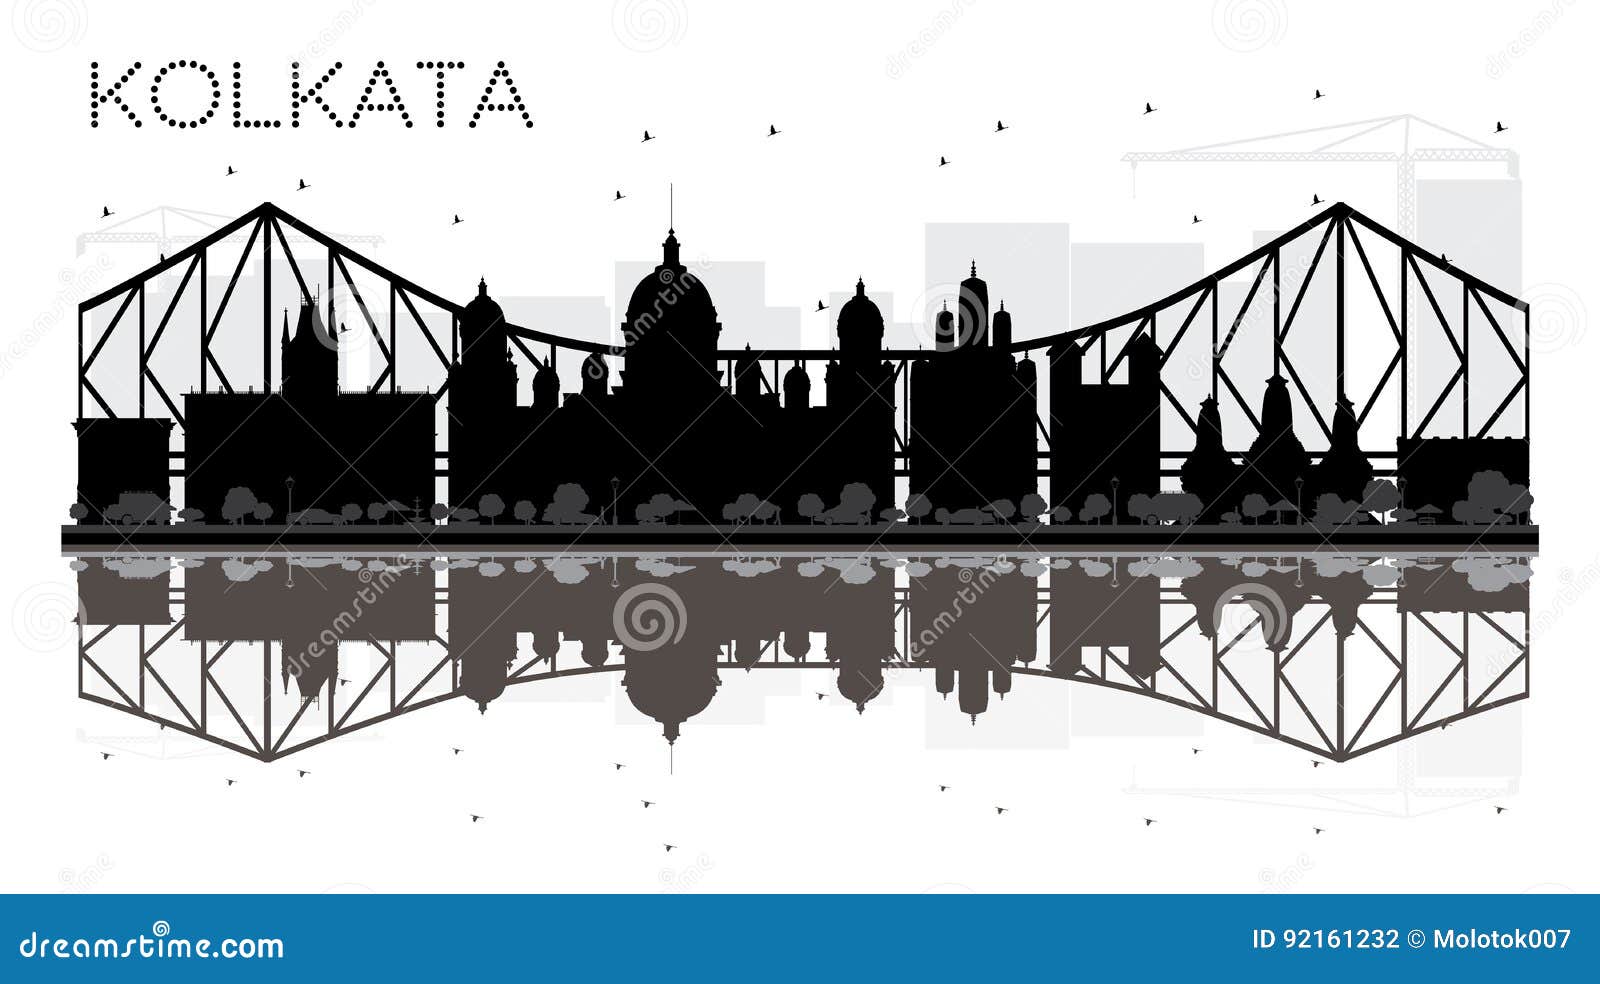 KOLKATA (Calcutta) city vector hand drawing panoramic sketch illustration -  Vectorjunky - Free Vectors, Icons, Logos and More